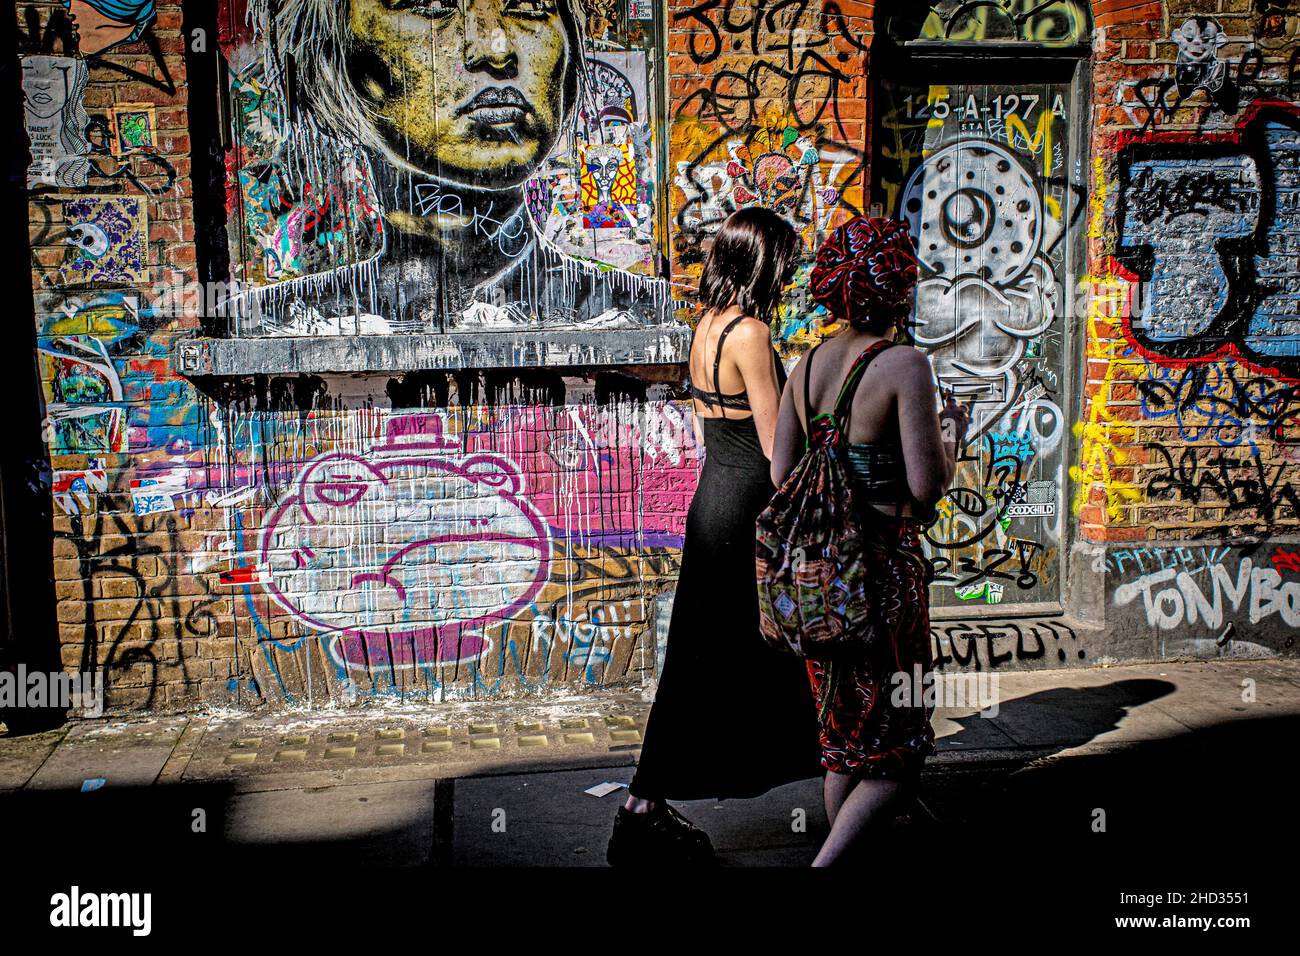 Visite de l'art de rue et grafitti sur les célèbres rues de Brick Lane Market , est de Londres .East london shoreditch district est devenu iconique . Banque D'Images